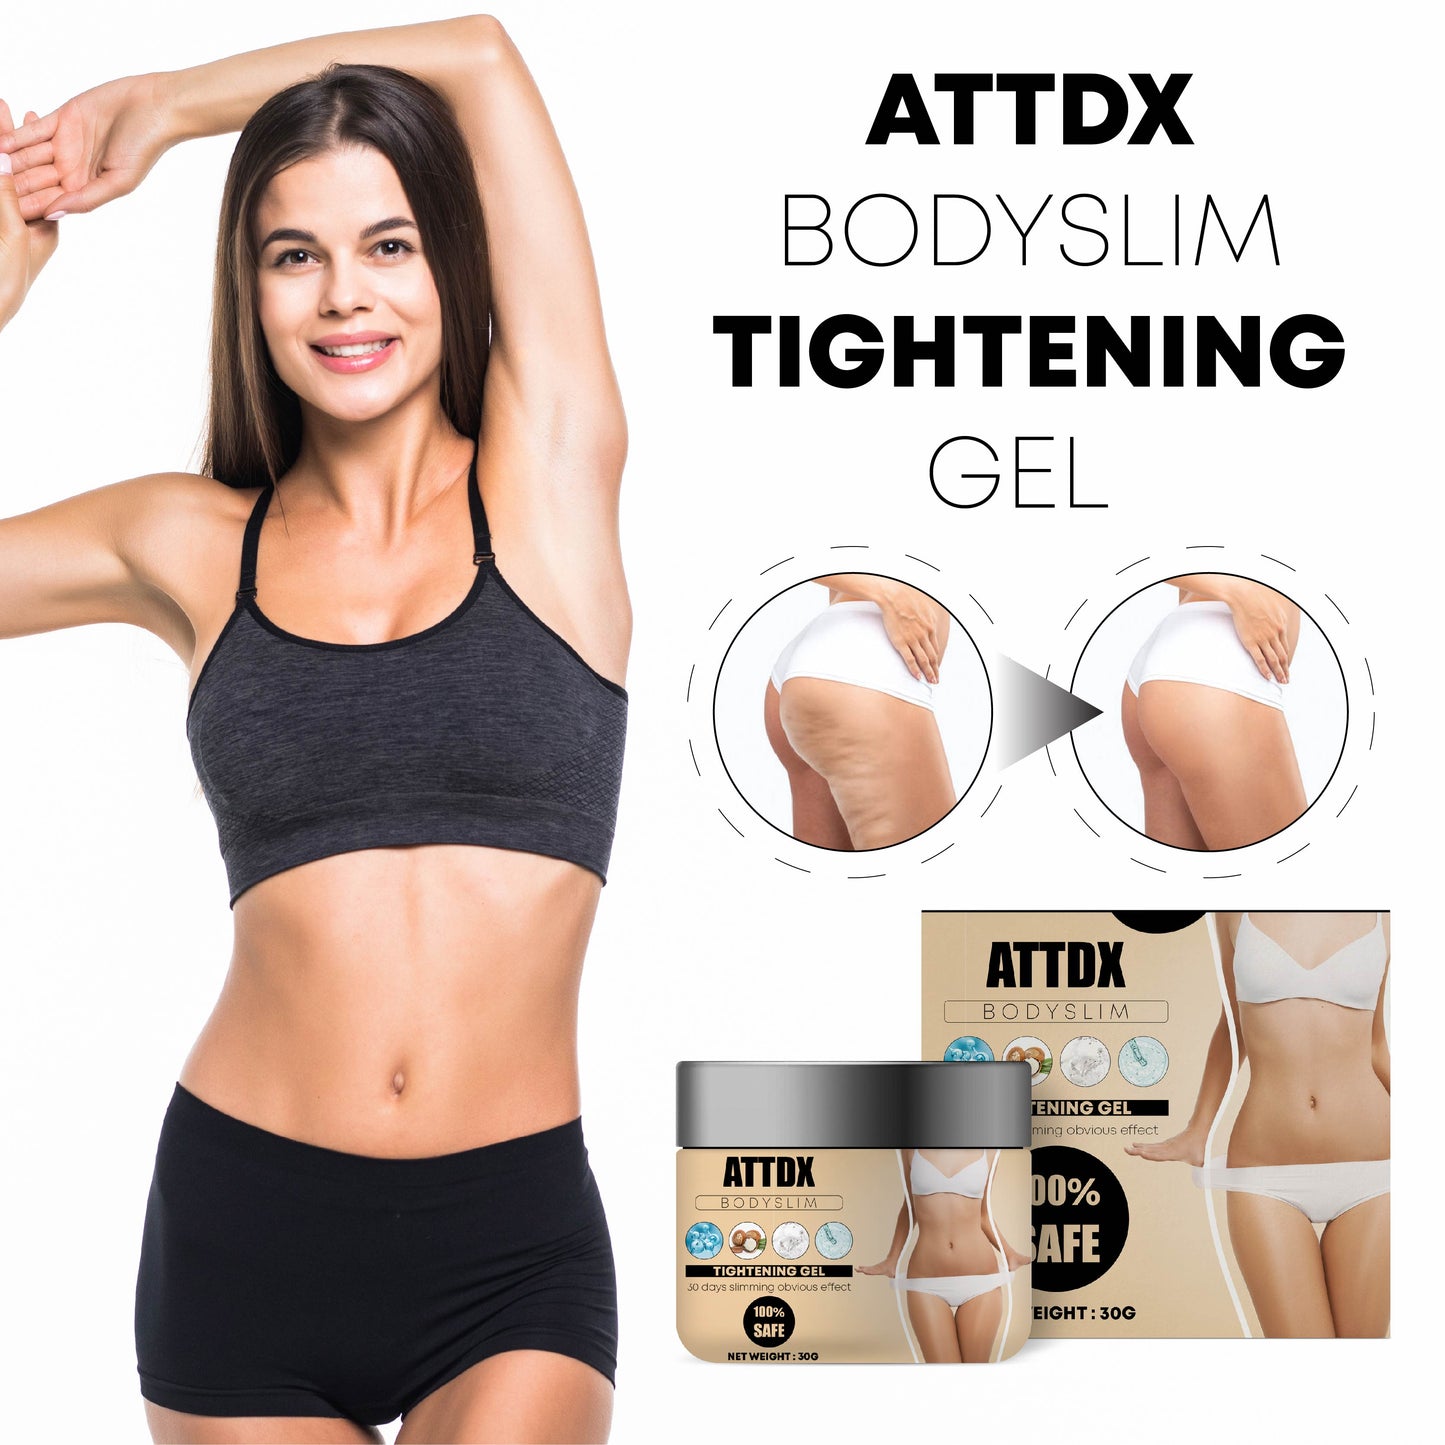 ATTDX BodySlim Tightening Gel